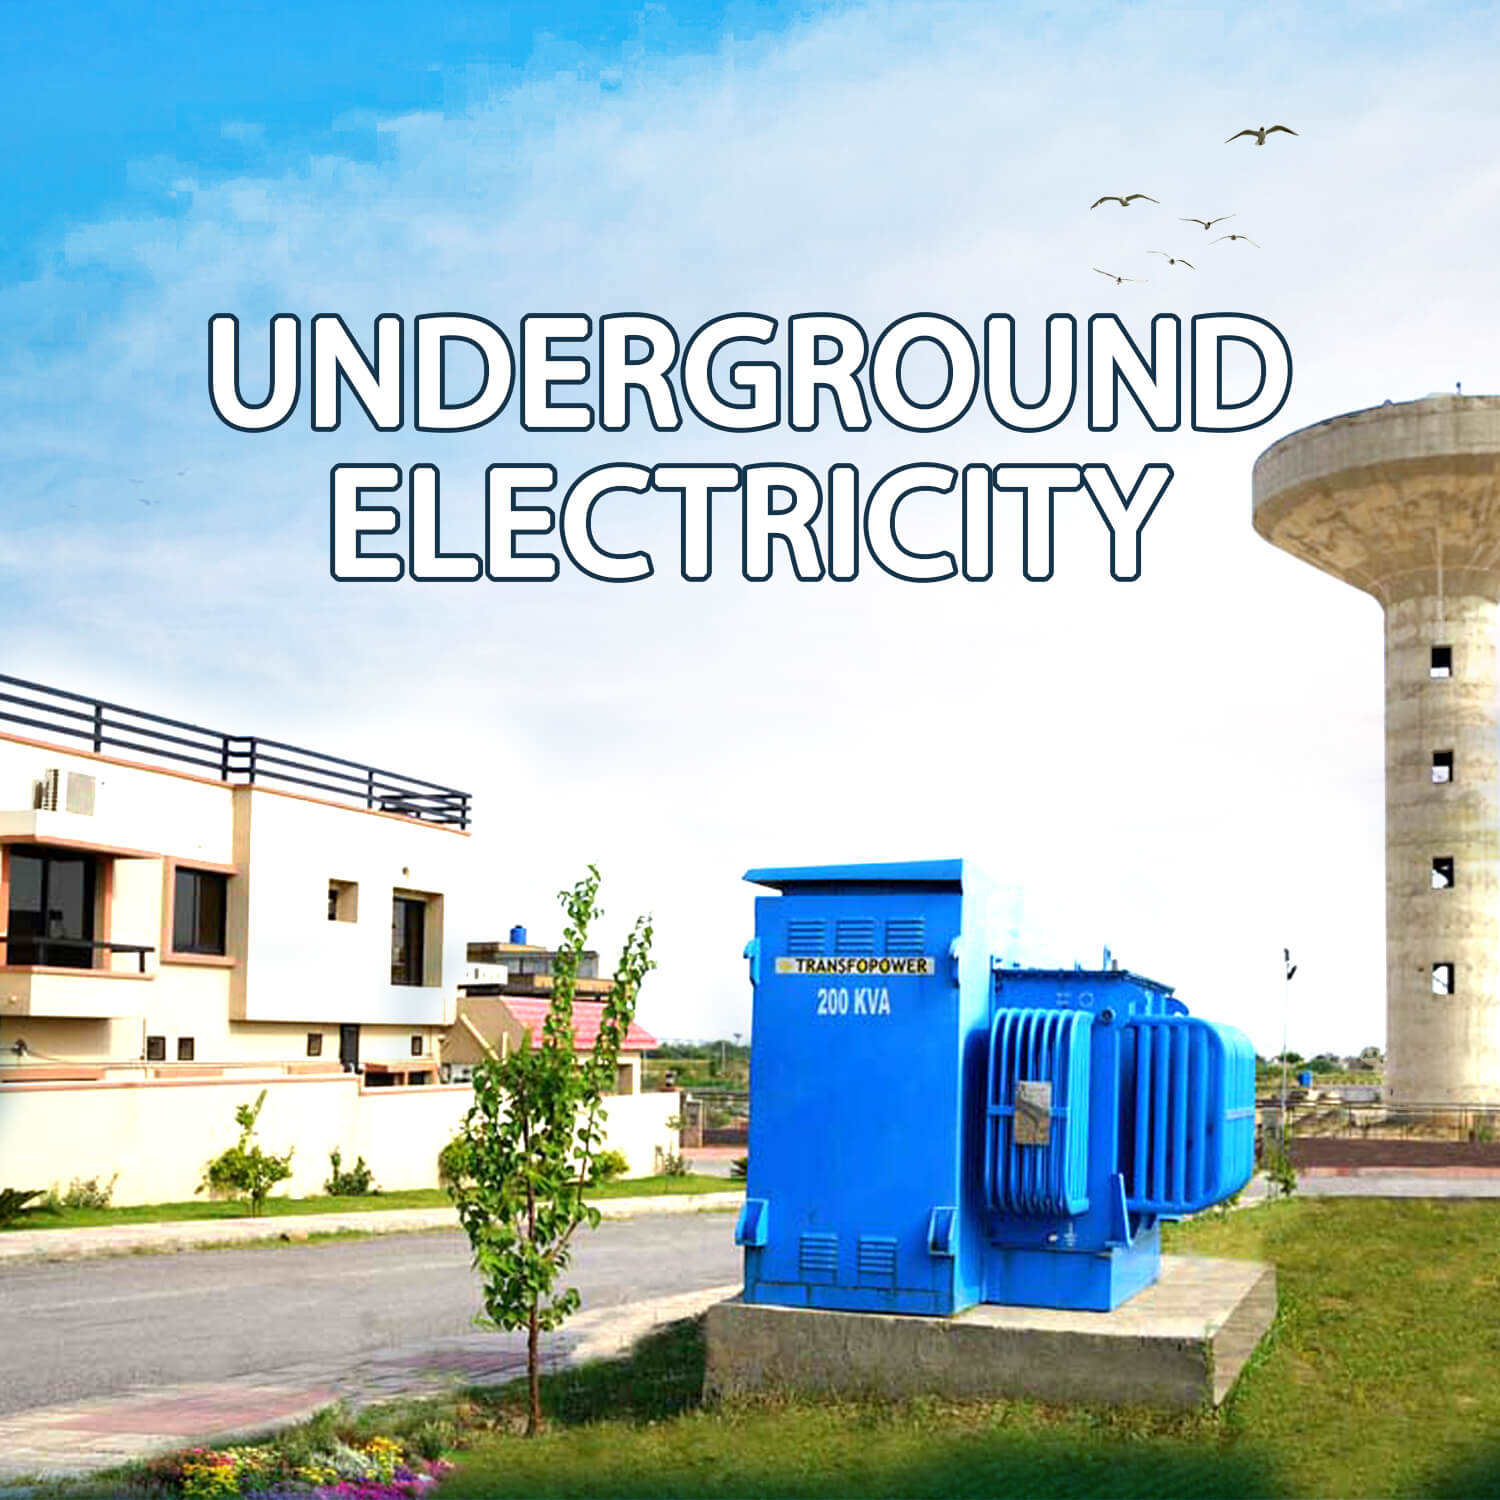 Under Ground Electricity